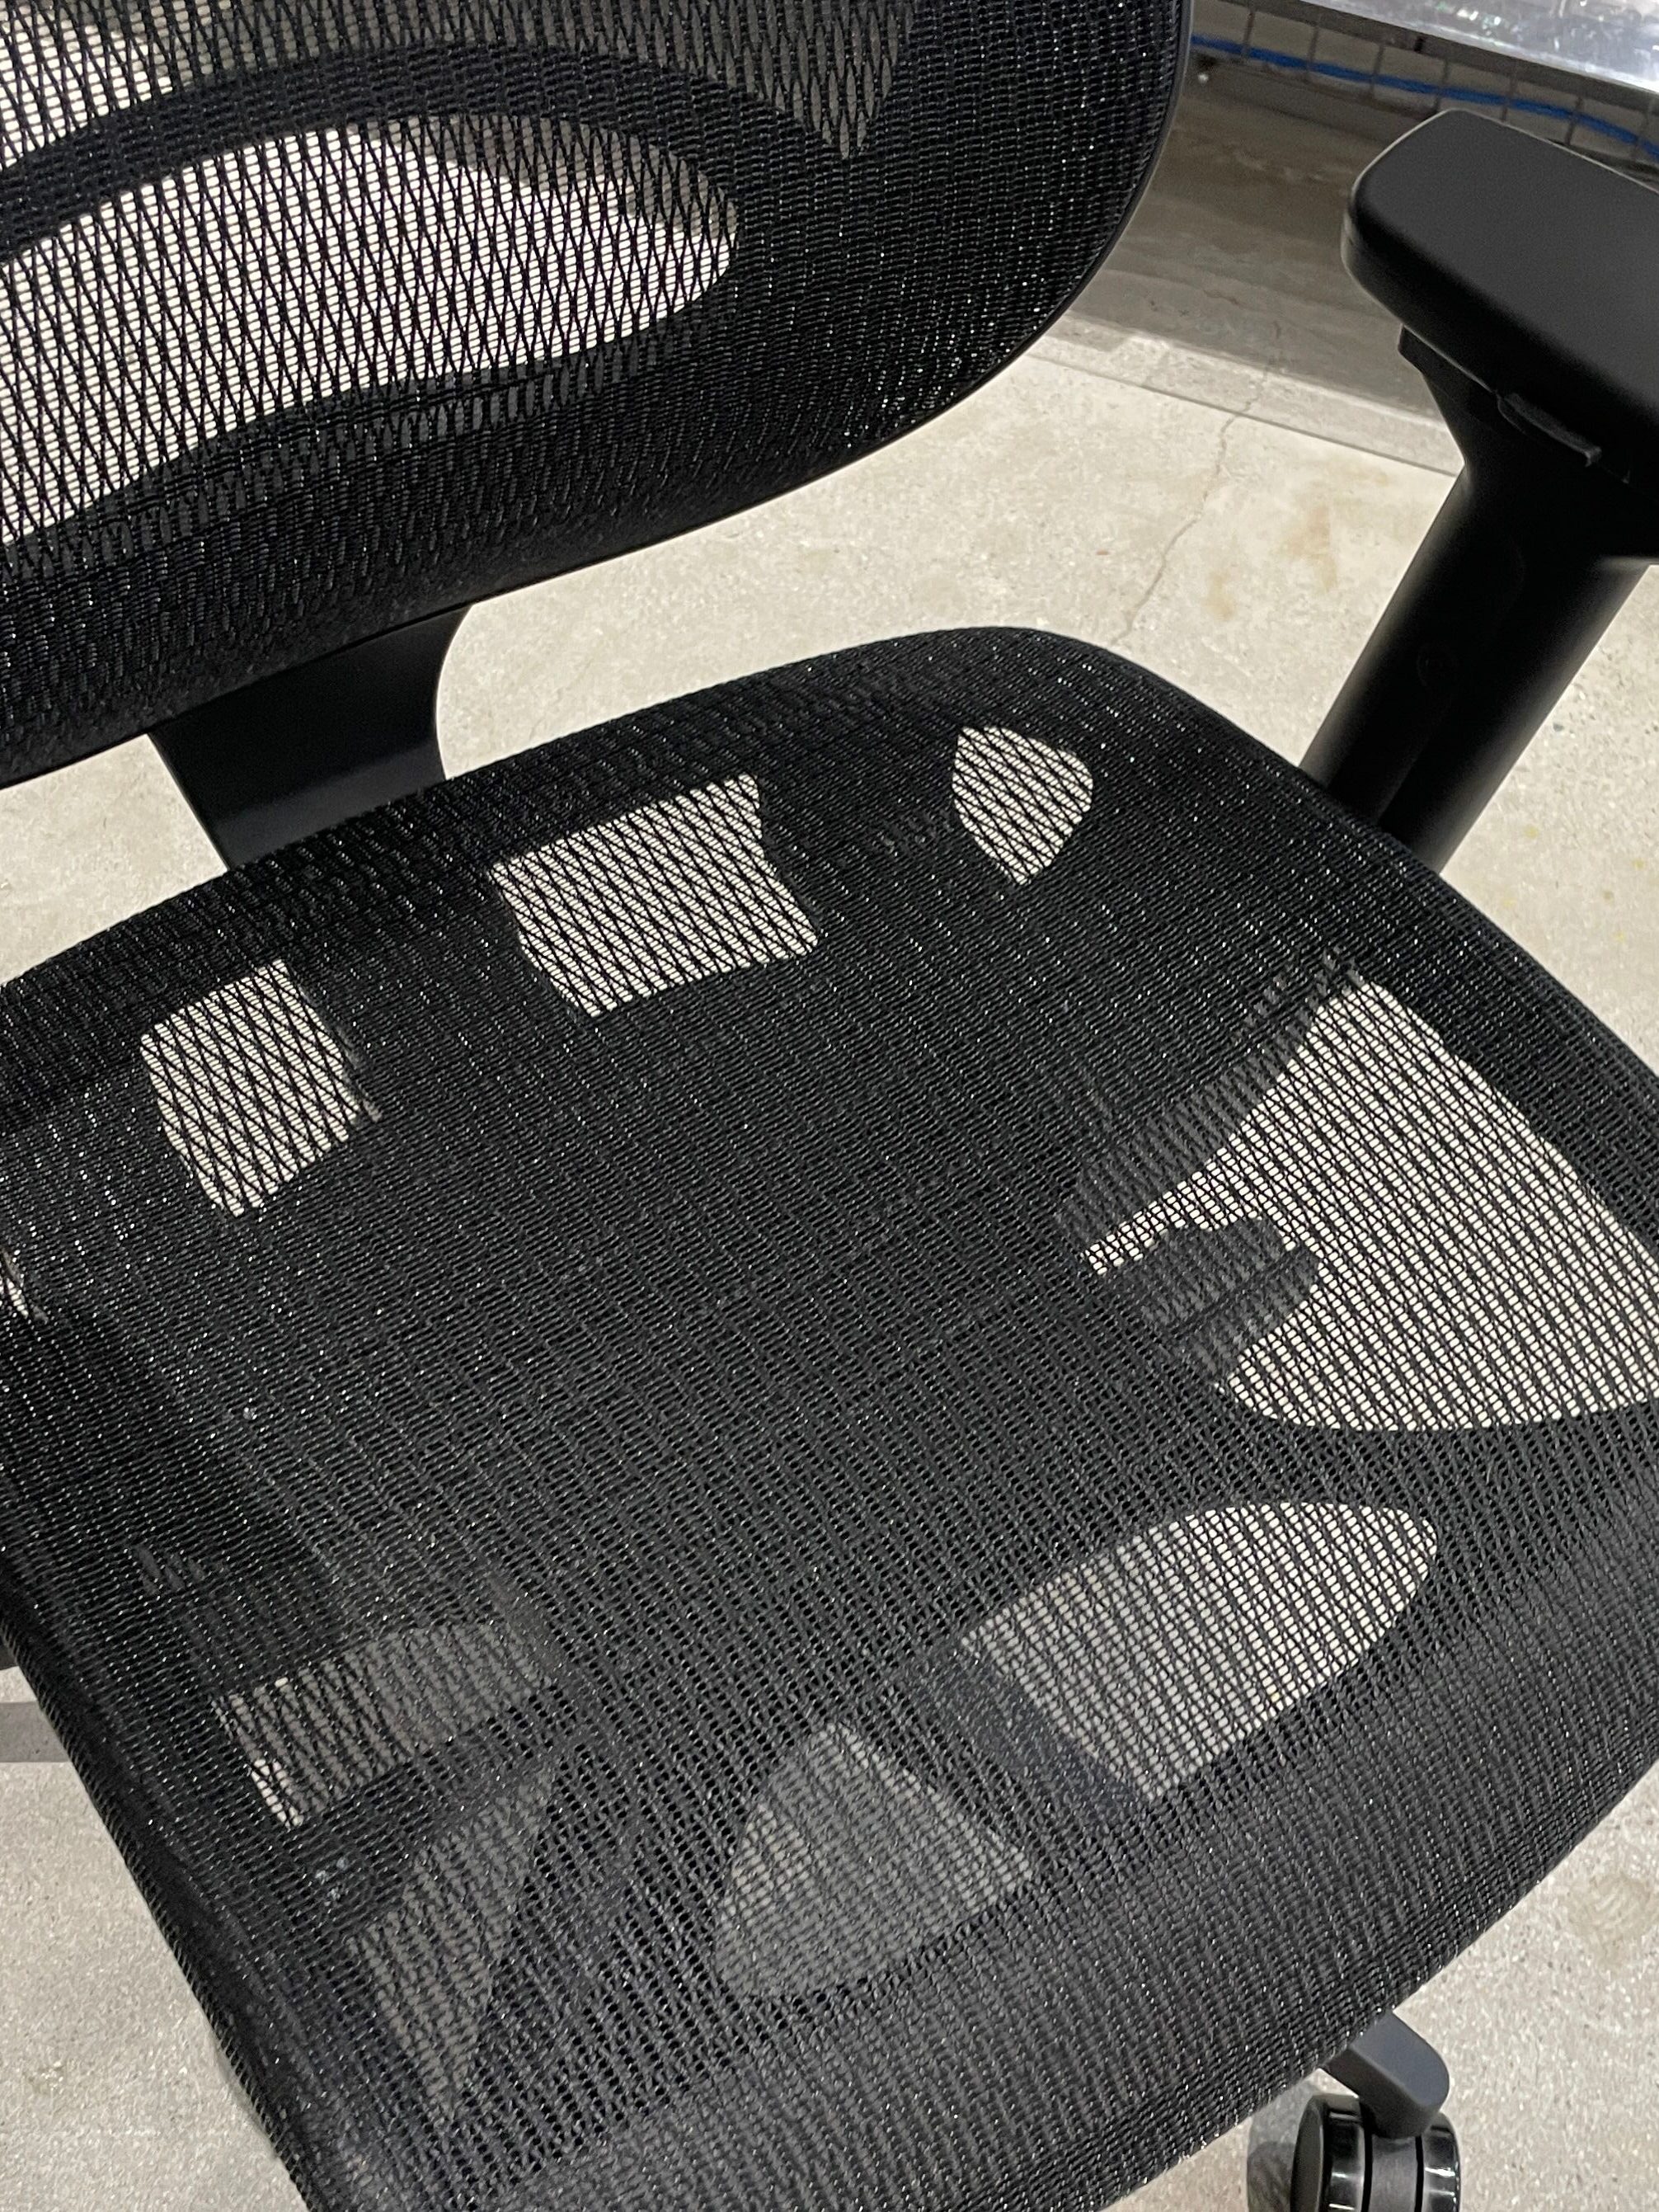 驚きの破格値wavebone Voyager 2 mesh/メッシュ DTMワークチェア 座椅子